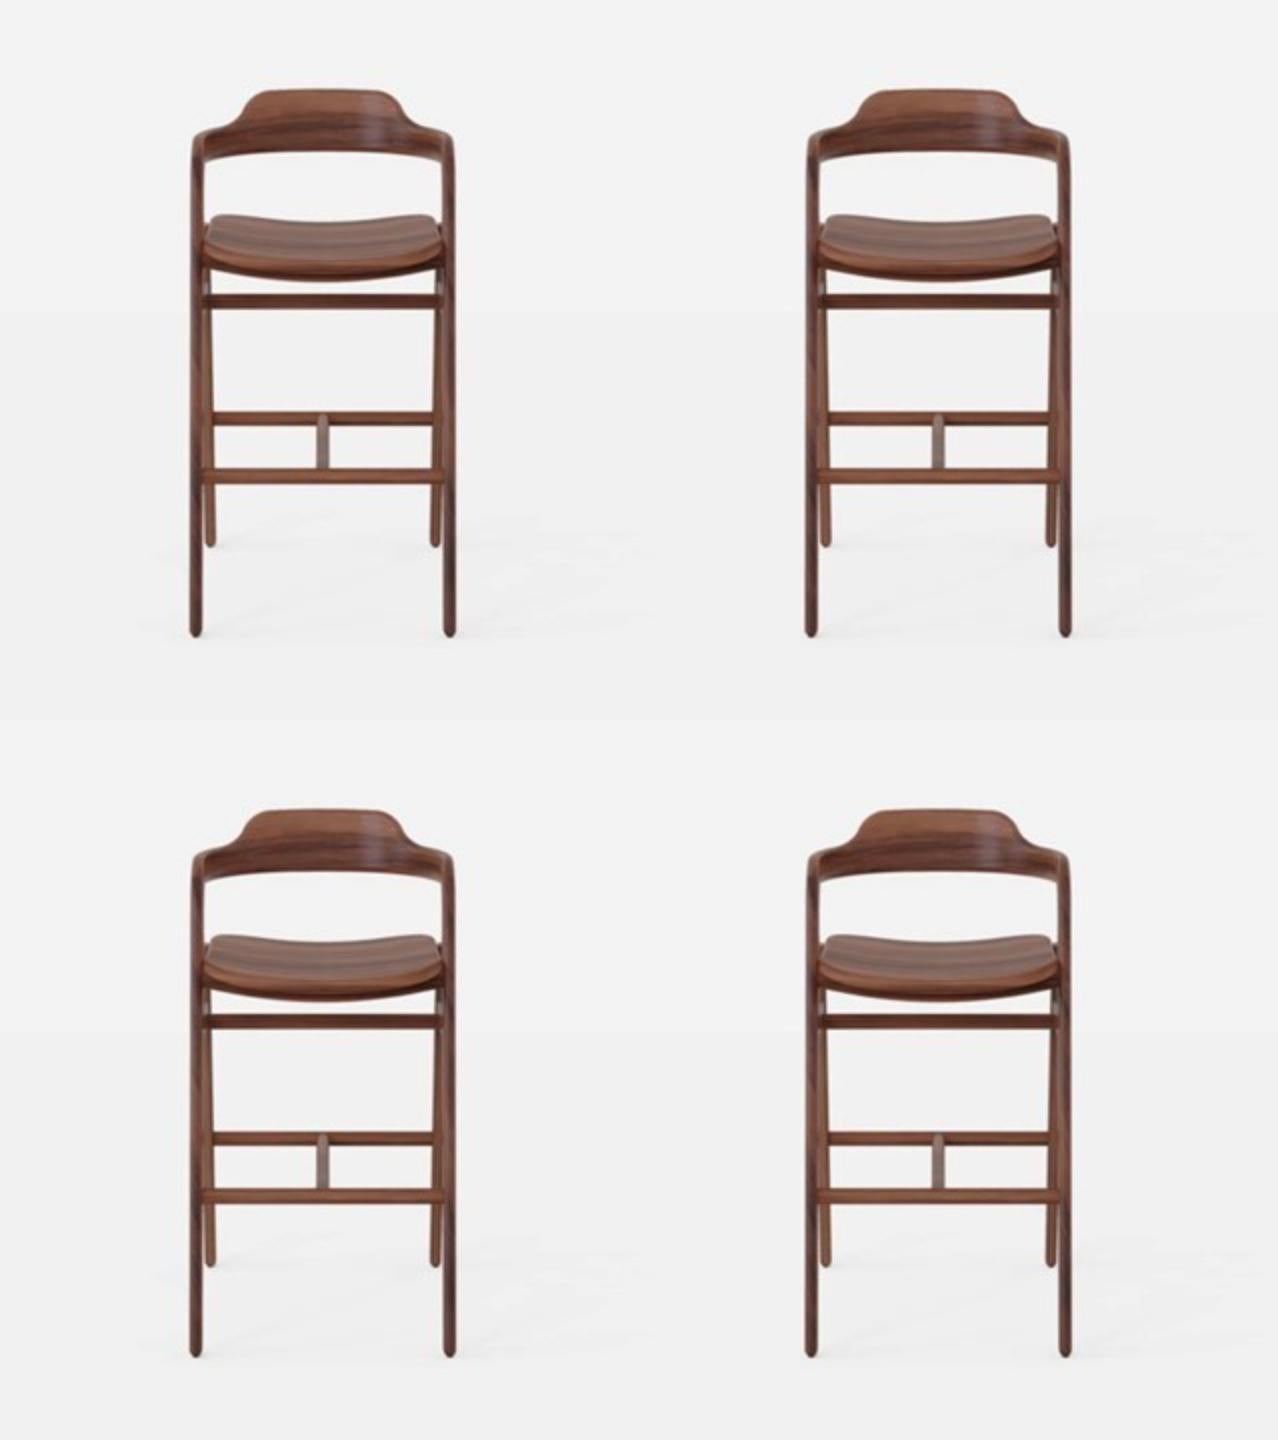 Ensemble de 4 chaises hautes équilibrées par Sebastián Angeles
Matériau : Noyer
Dimensions : L 45 x P 40 x 100 cm : L 45 x P 40 x 100 cm.
Egalement disponible : Autres couleurs disponibles.

L'amour des processus, les propriétés des matériaux, les